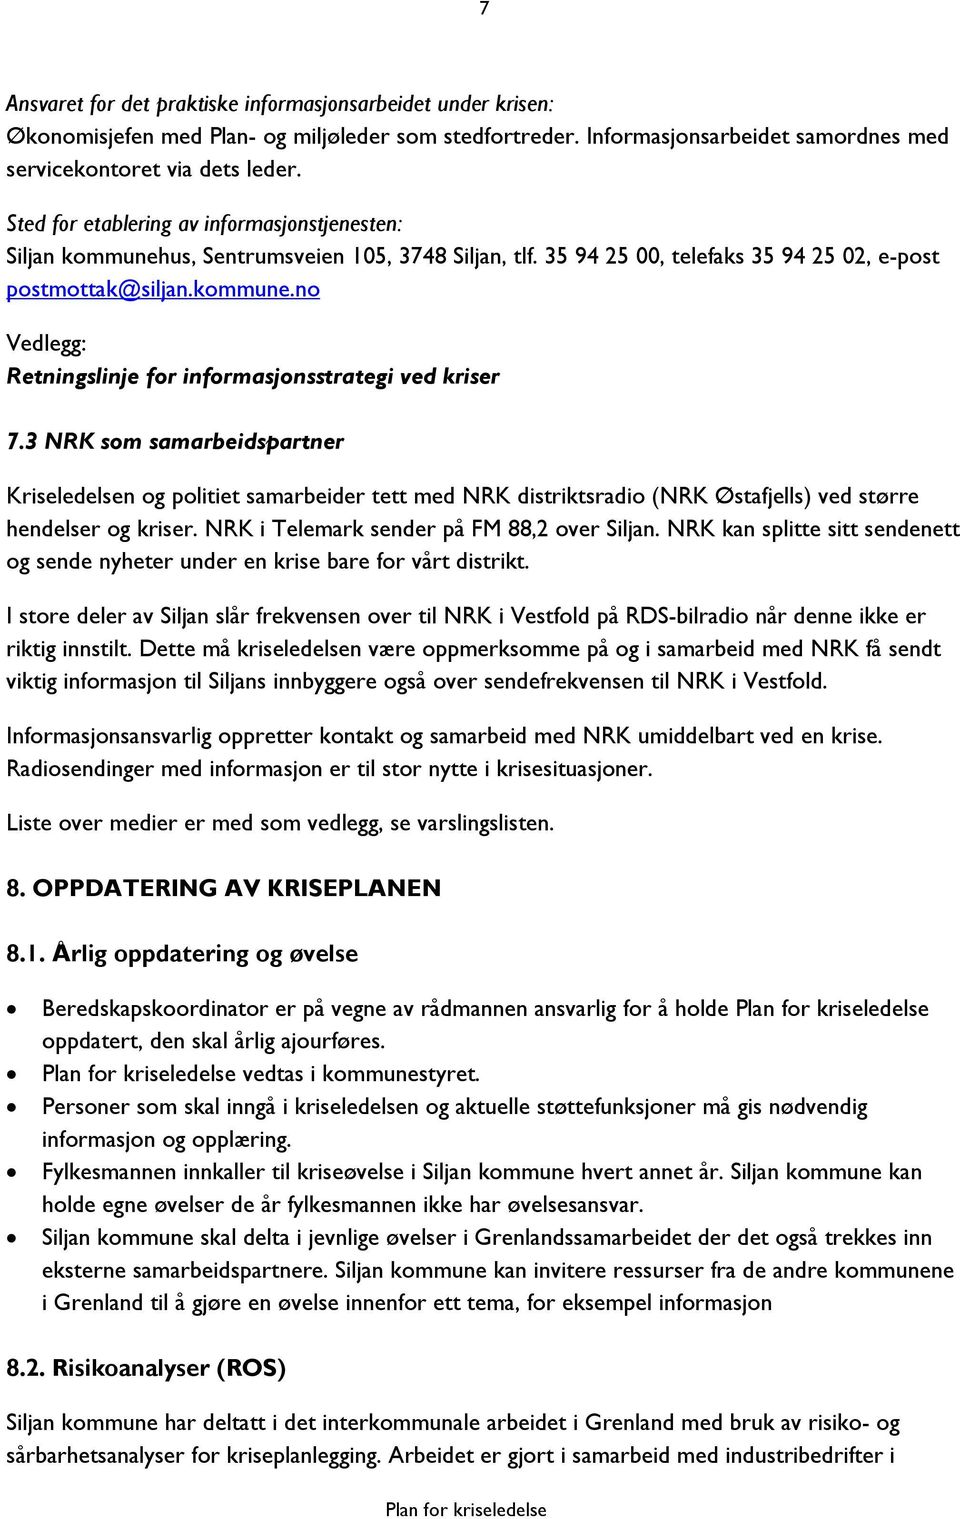 3 NRK som samarbeidspartner Kriseledelsen og politiet samarbeider tett med NRK distriktsradio (NRK Østafjells) ved større hendelser og kriser. NRK i Telemark sender på FM 88,2 over Siljan.